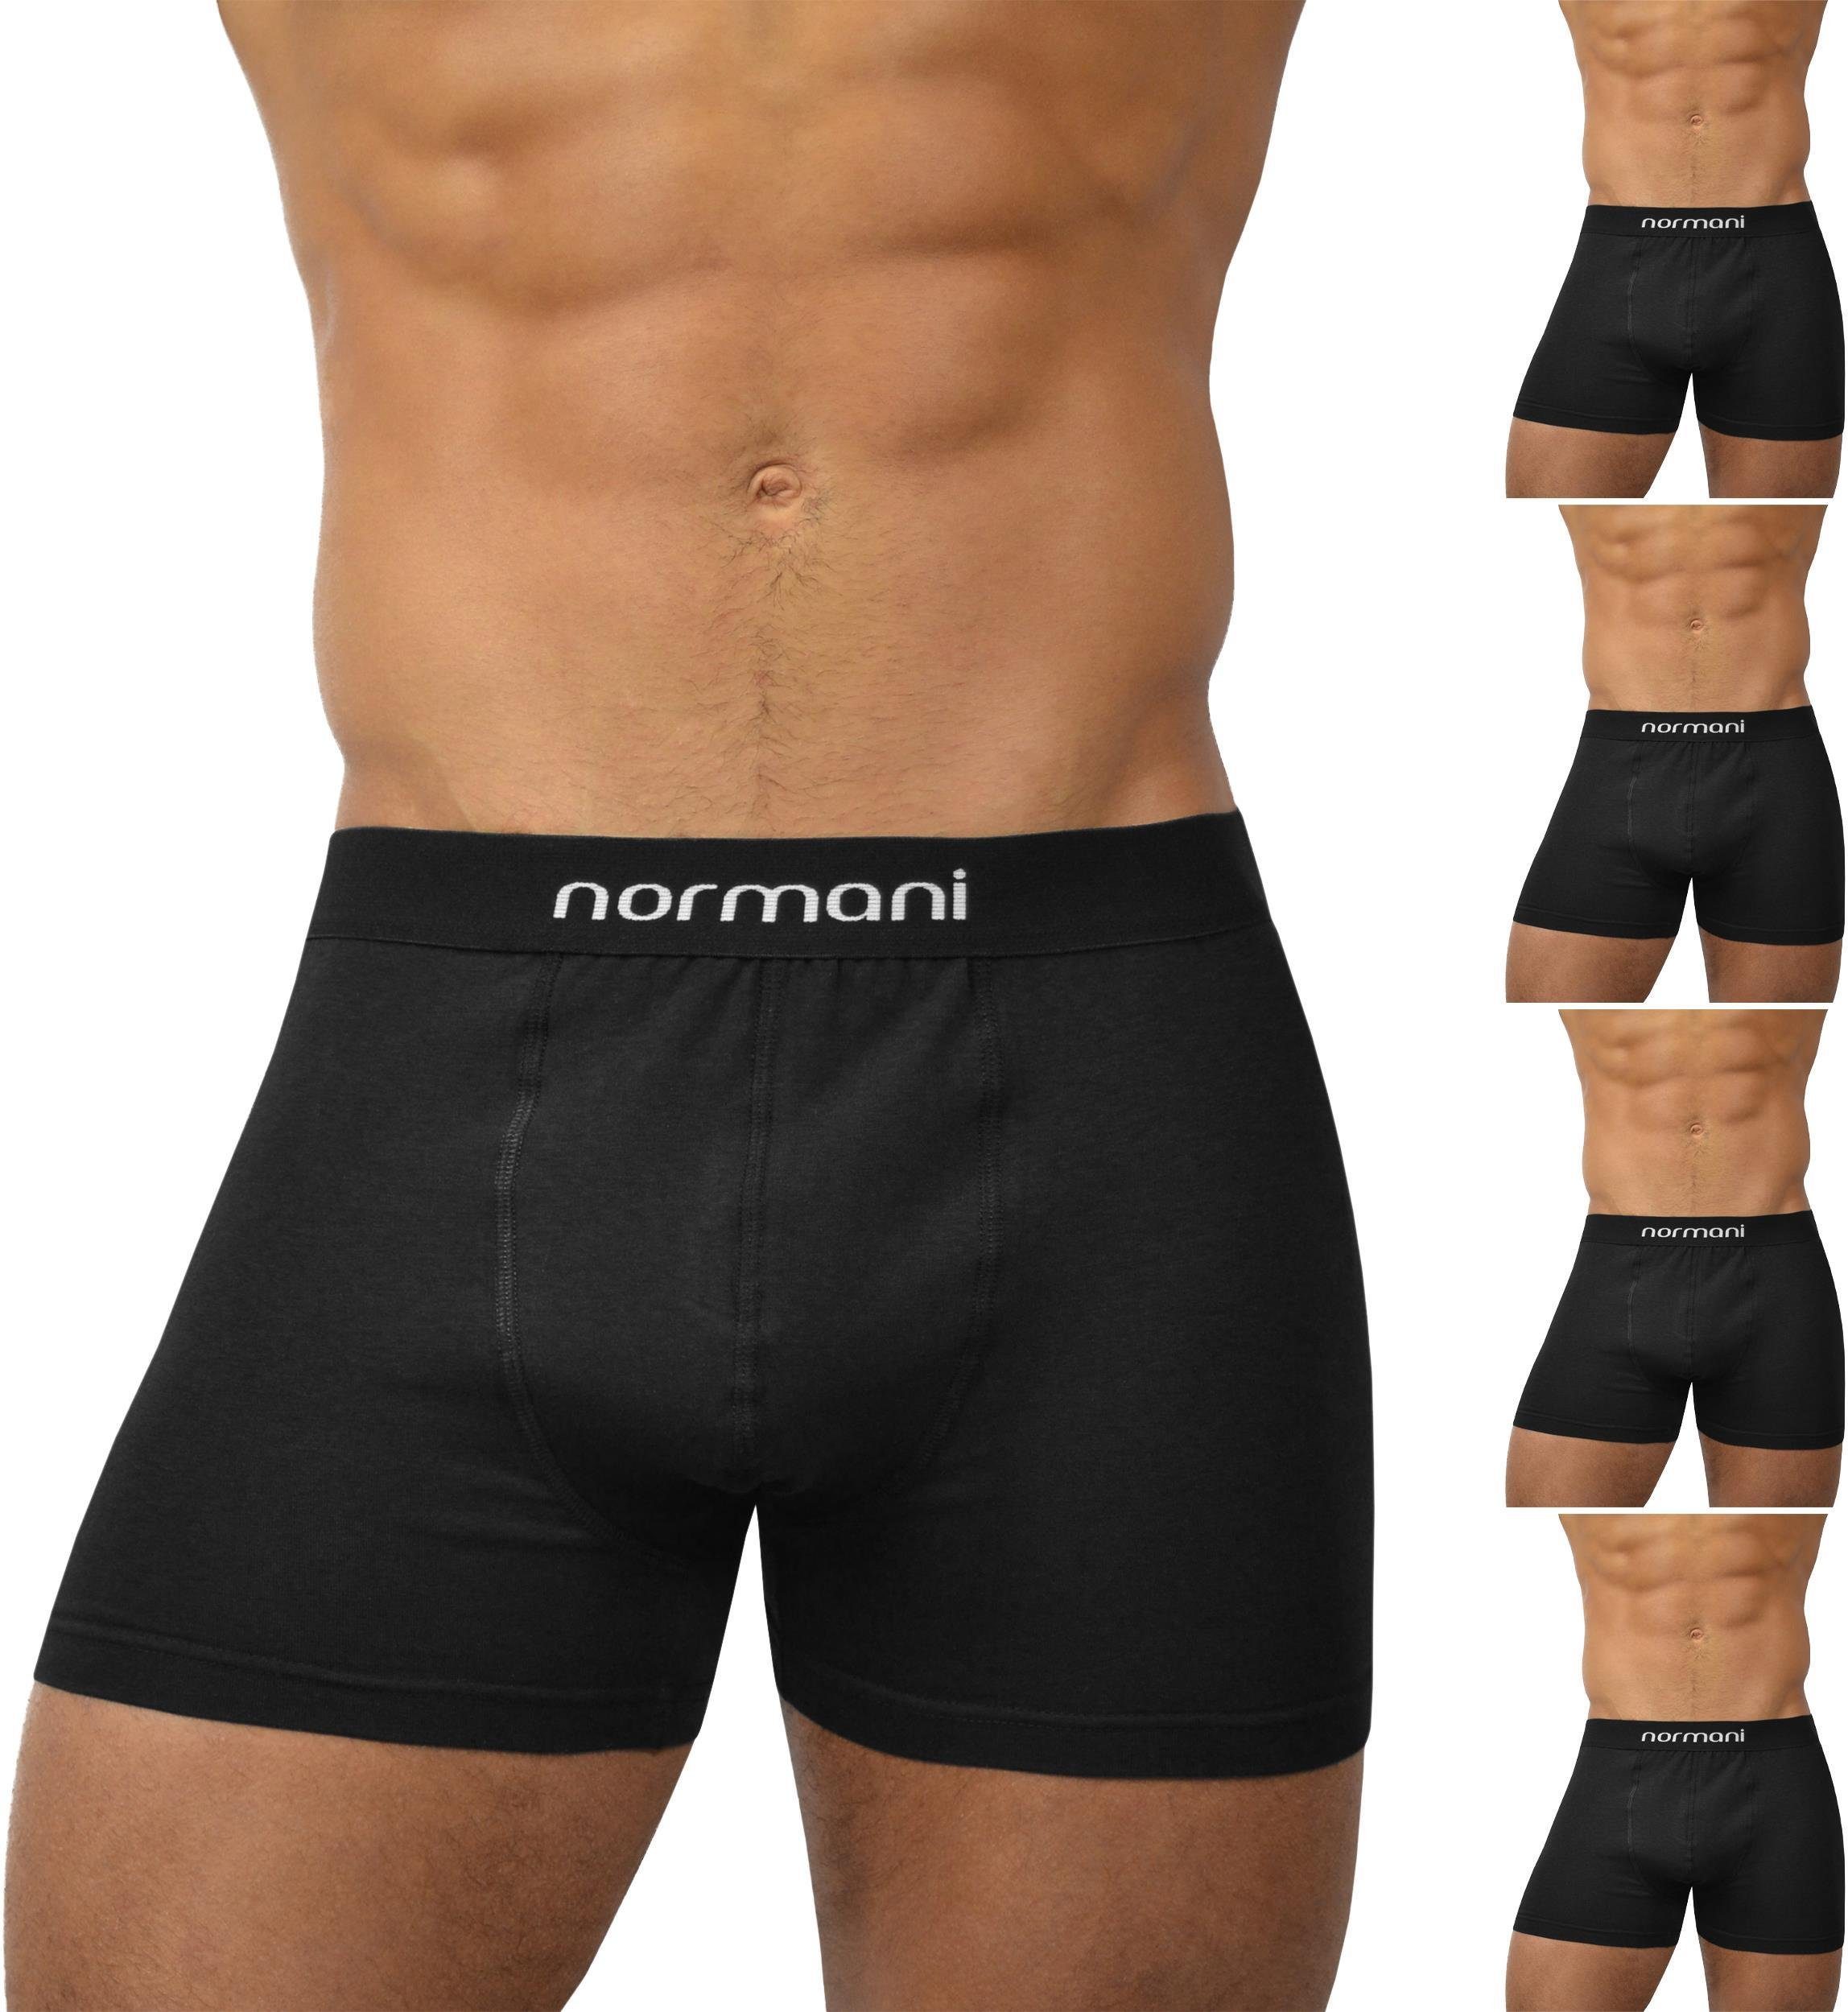 normani Retro Boxer 6 Stück Retro Boxershorts aus Baumwolle Unterhose aus atmungsaktiver Baumwolle Basic Black